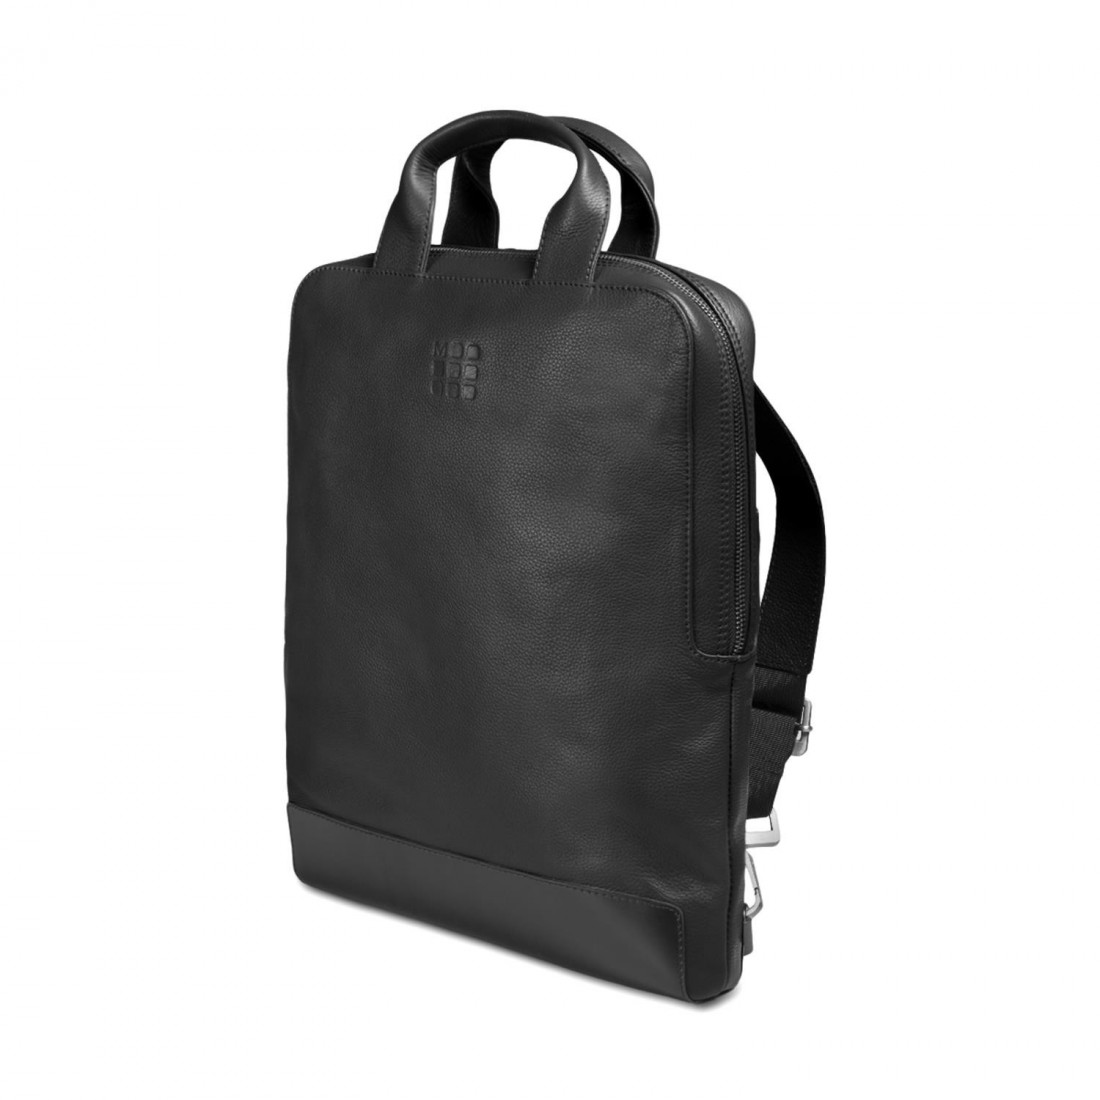 Moleskine Device Leather Bag Vertical - Black